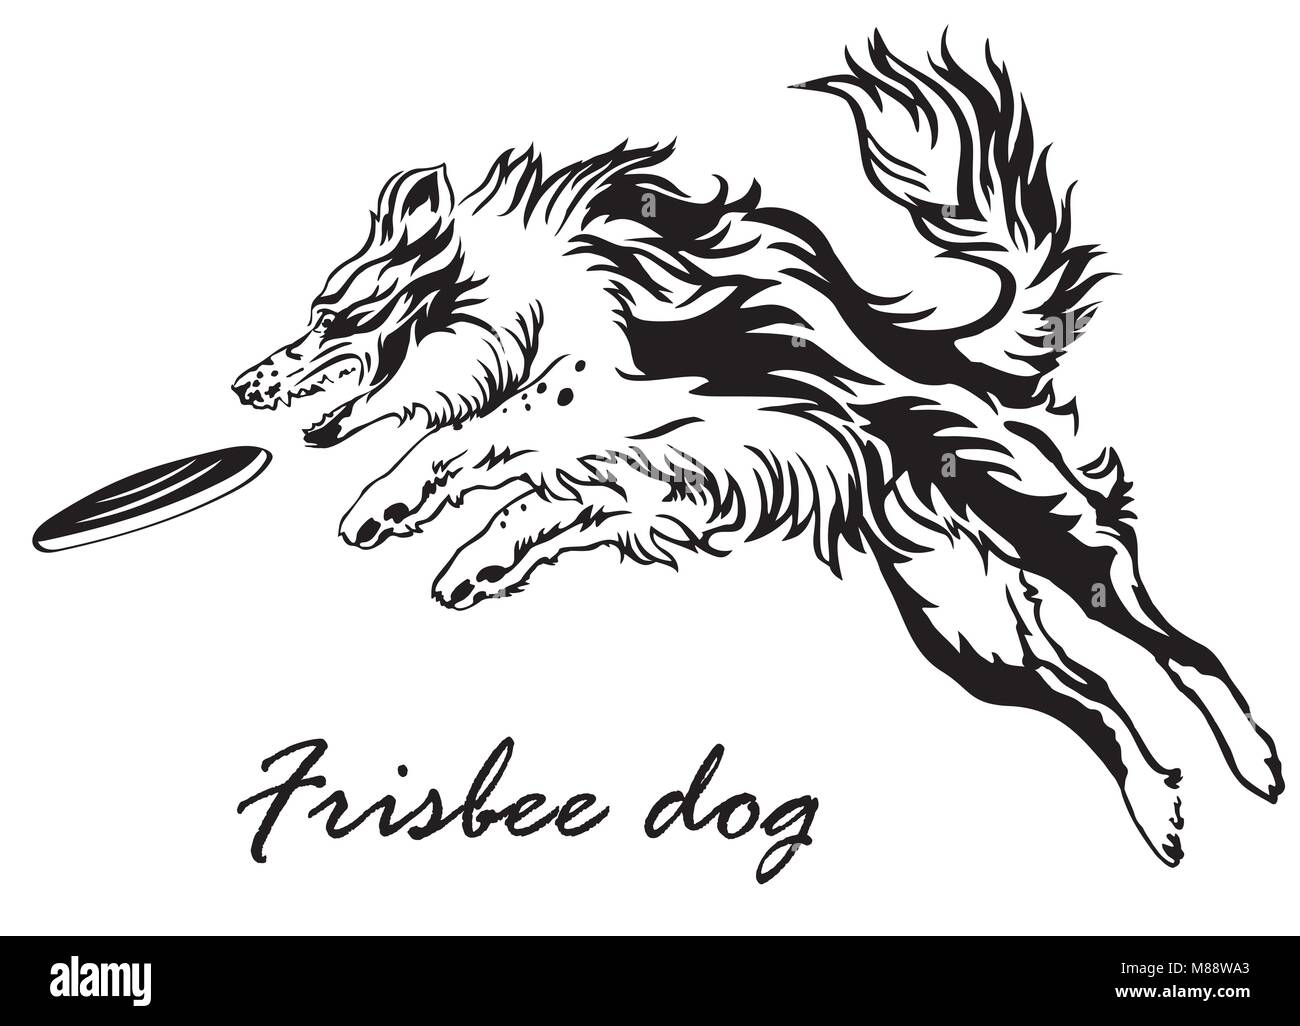 Vektor monochromen Abbildung mit Hund (Border Collie) auf weißem Hintergrund. Flauschigen schwarzen und weißen Hund im Profil anzeigen Springen und Fang Stock Vektor